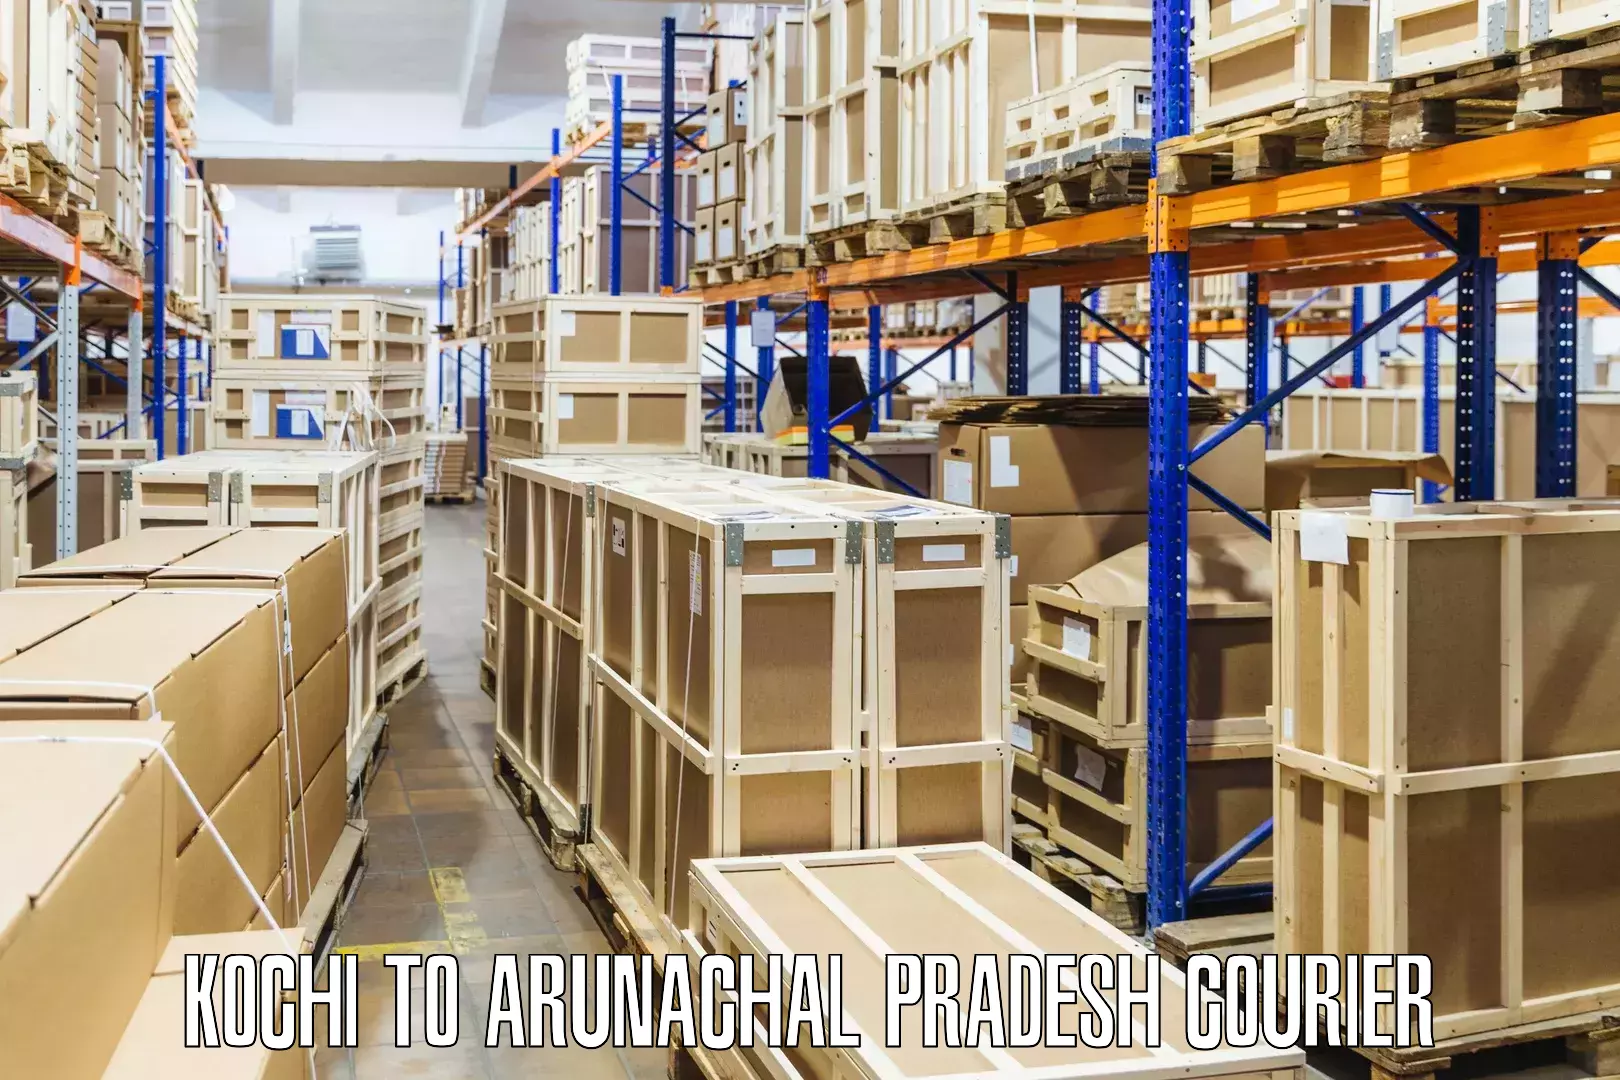 Sustainable courier practices Kochi to Arunachal Pradesh